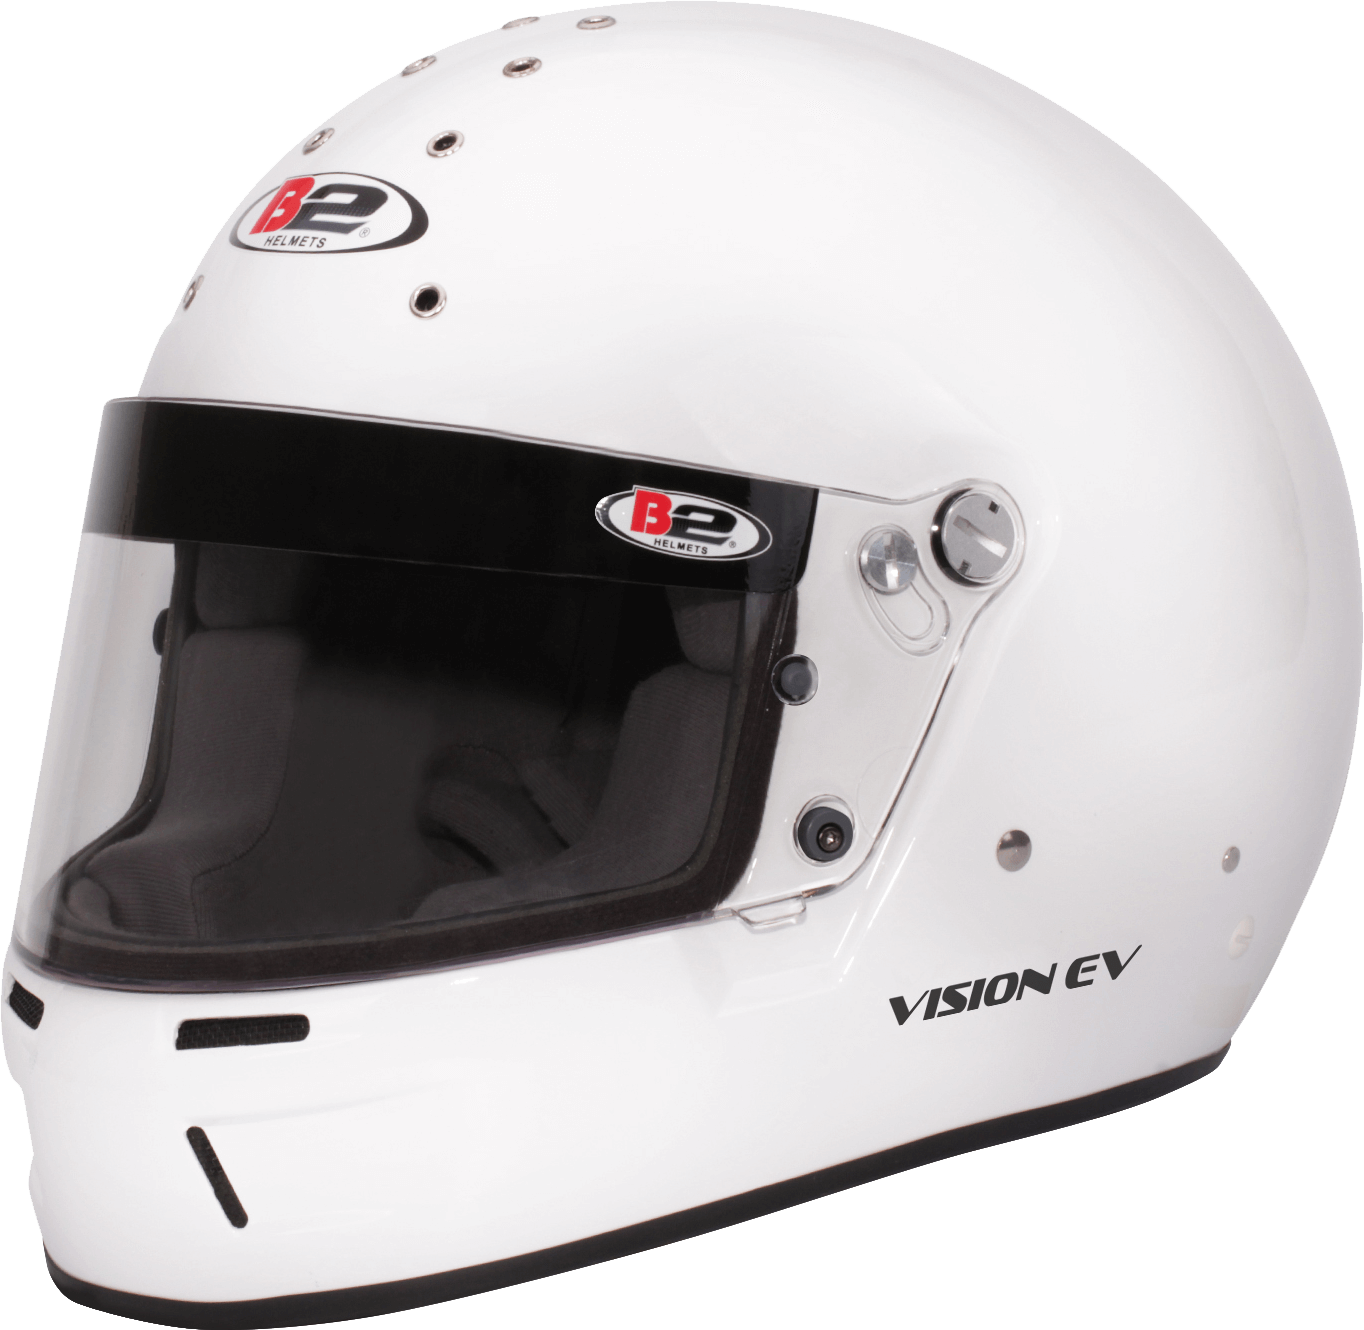 Vision EV | B2 Helmets